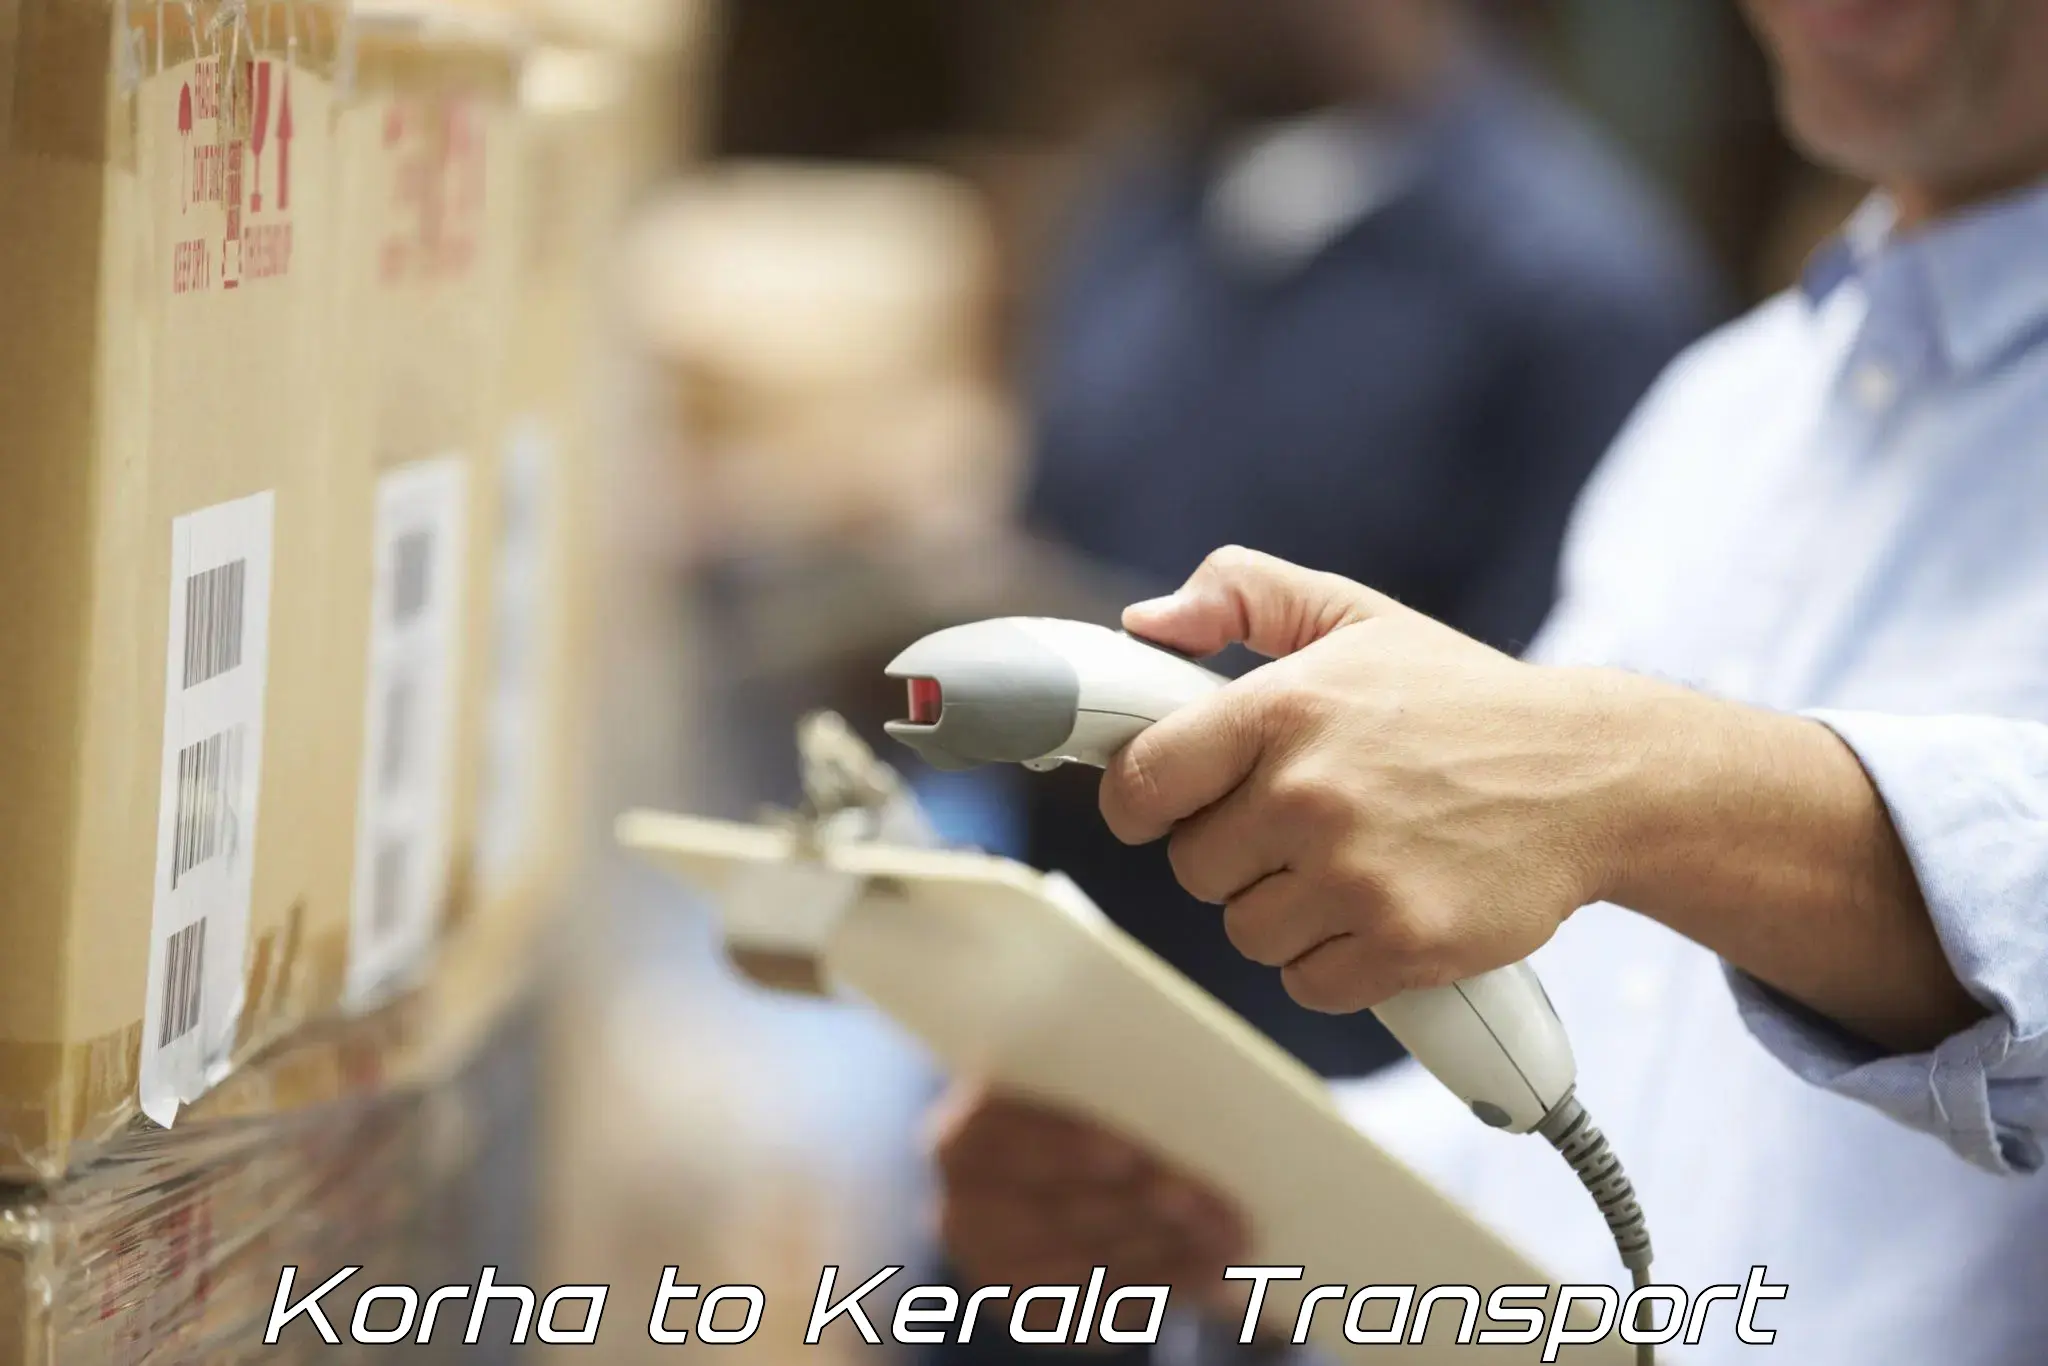 Container transportation services Korha to Kakkur